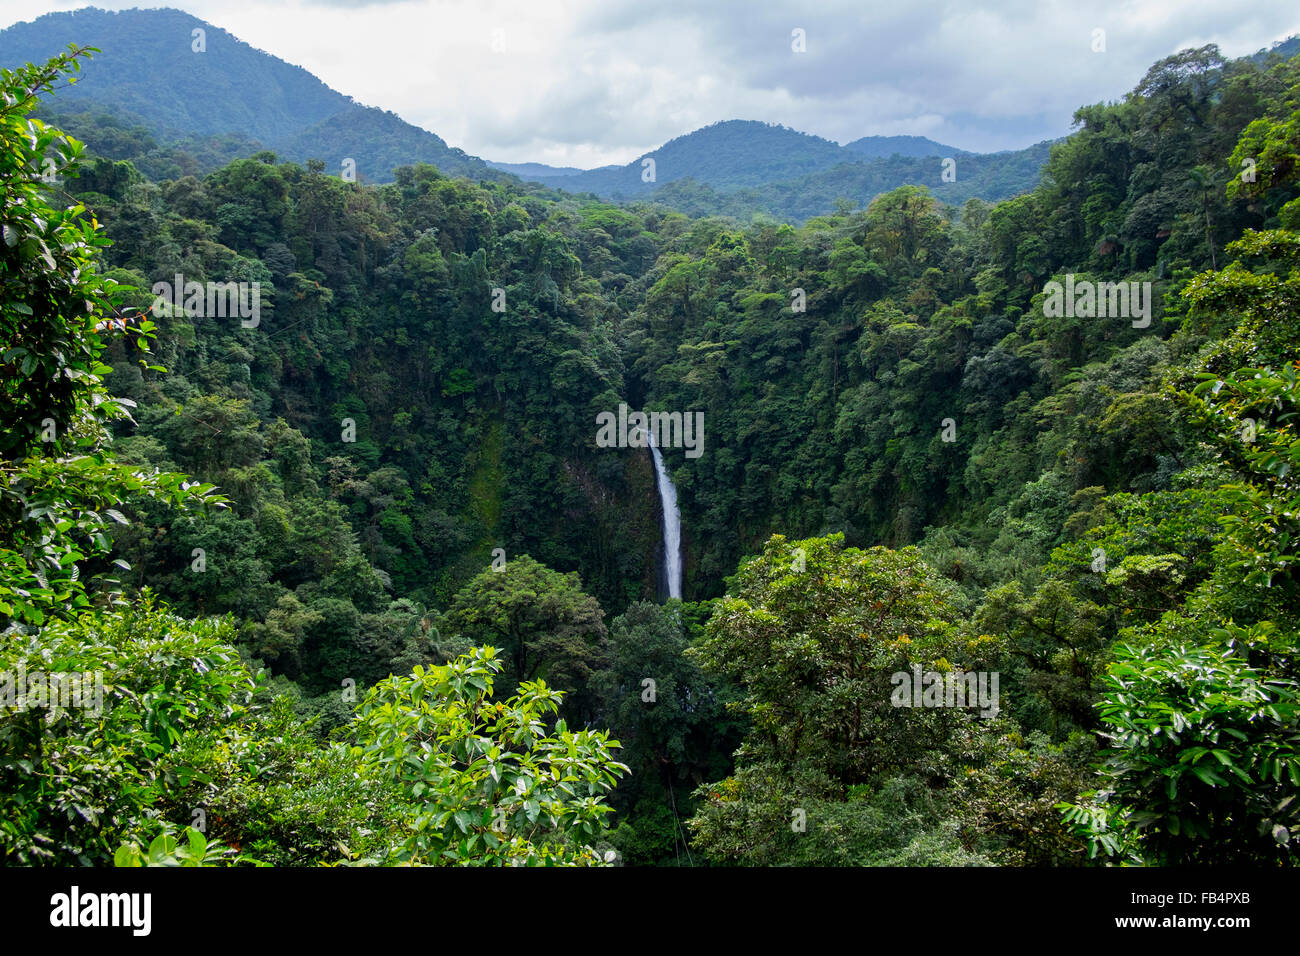 The La Fortuna waterfall close to the city of La Fortuna, Costa Rica. Stock Photo